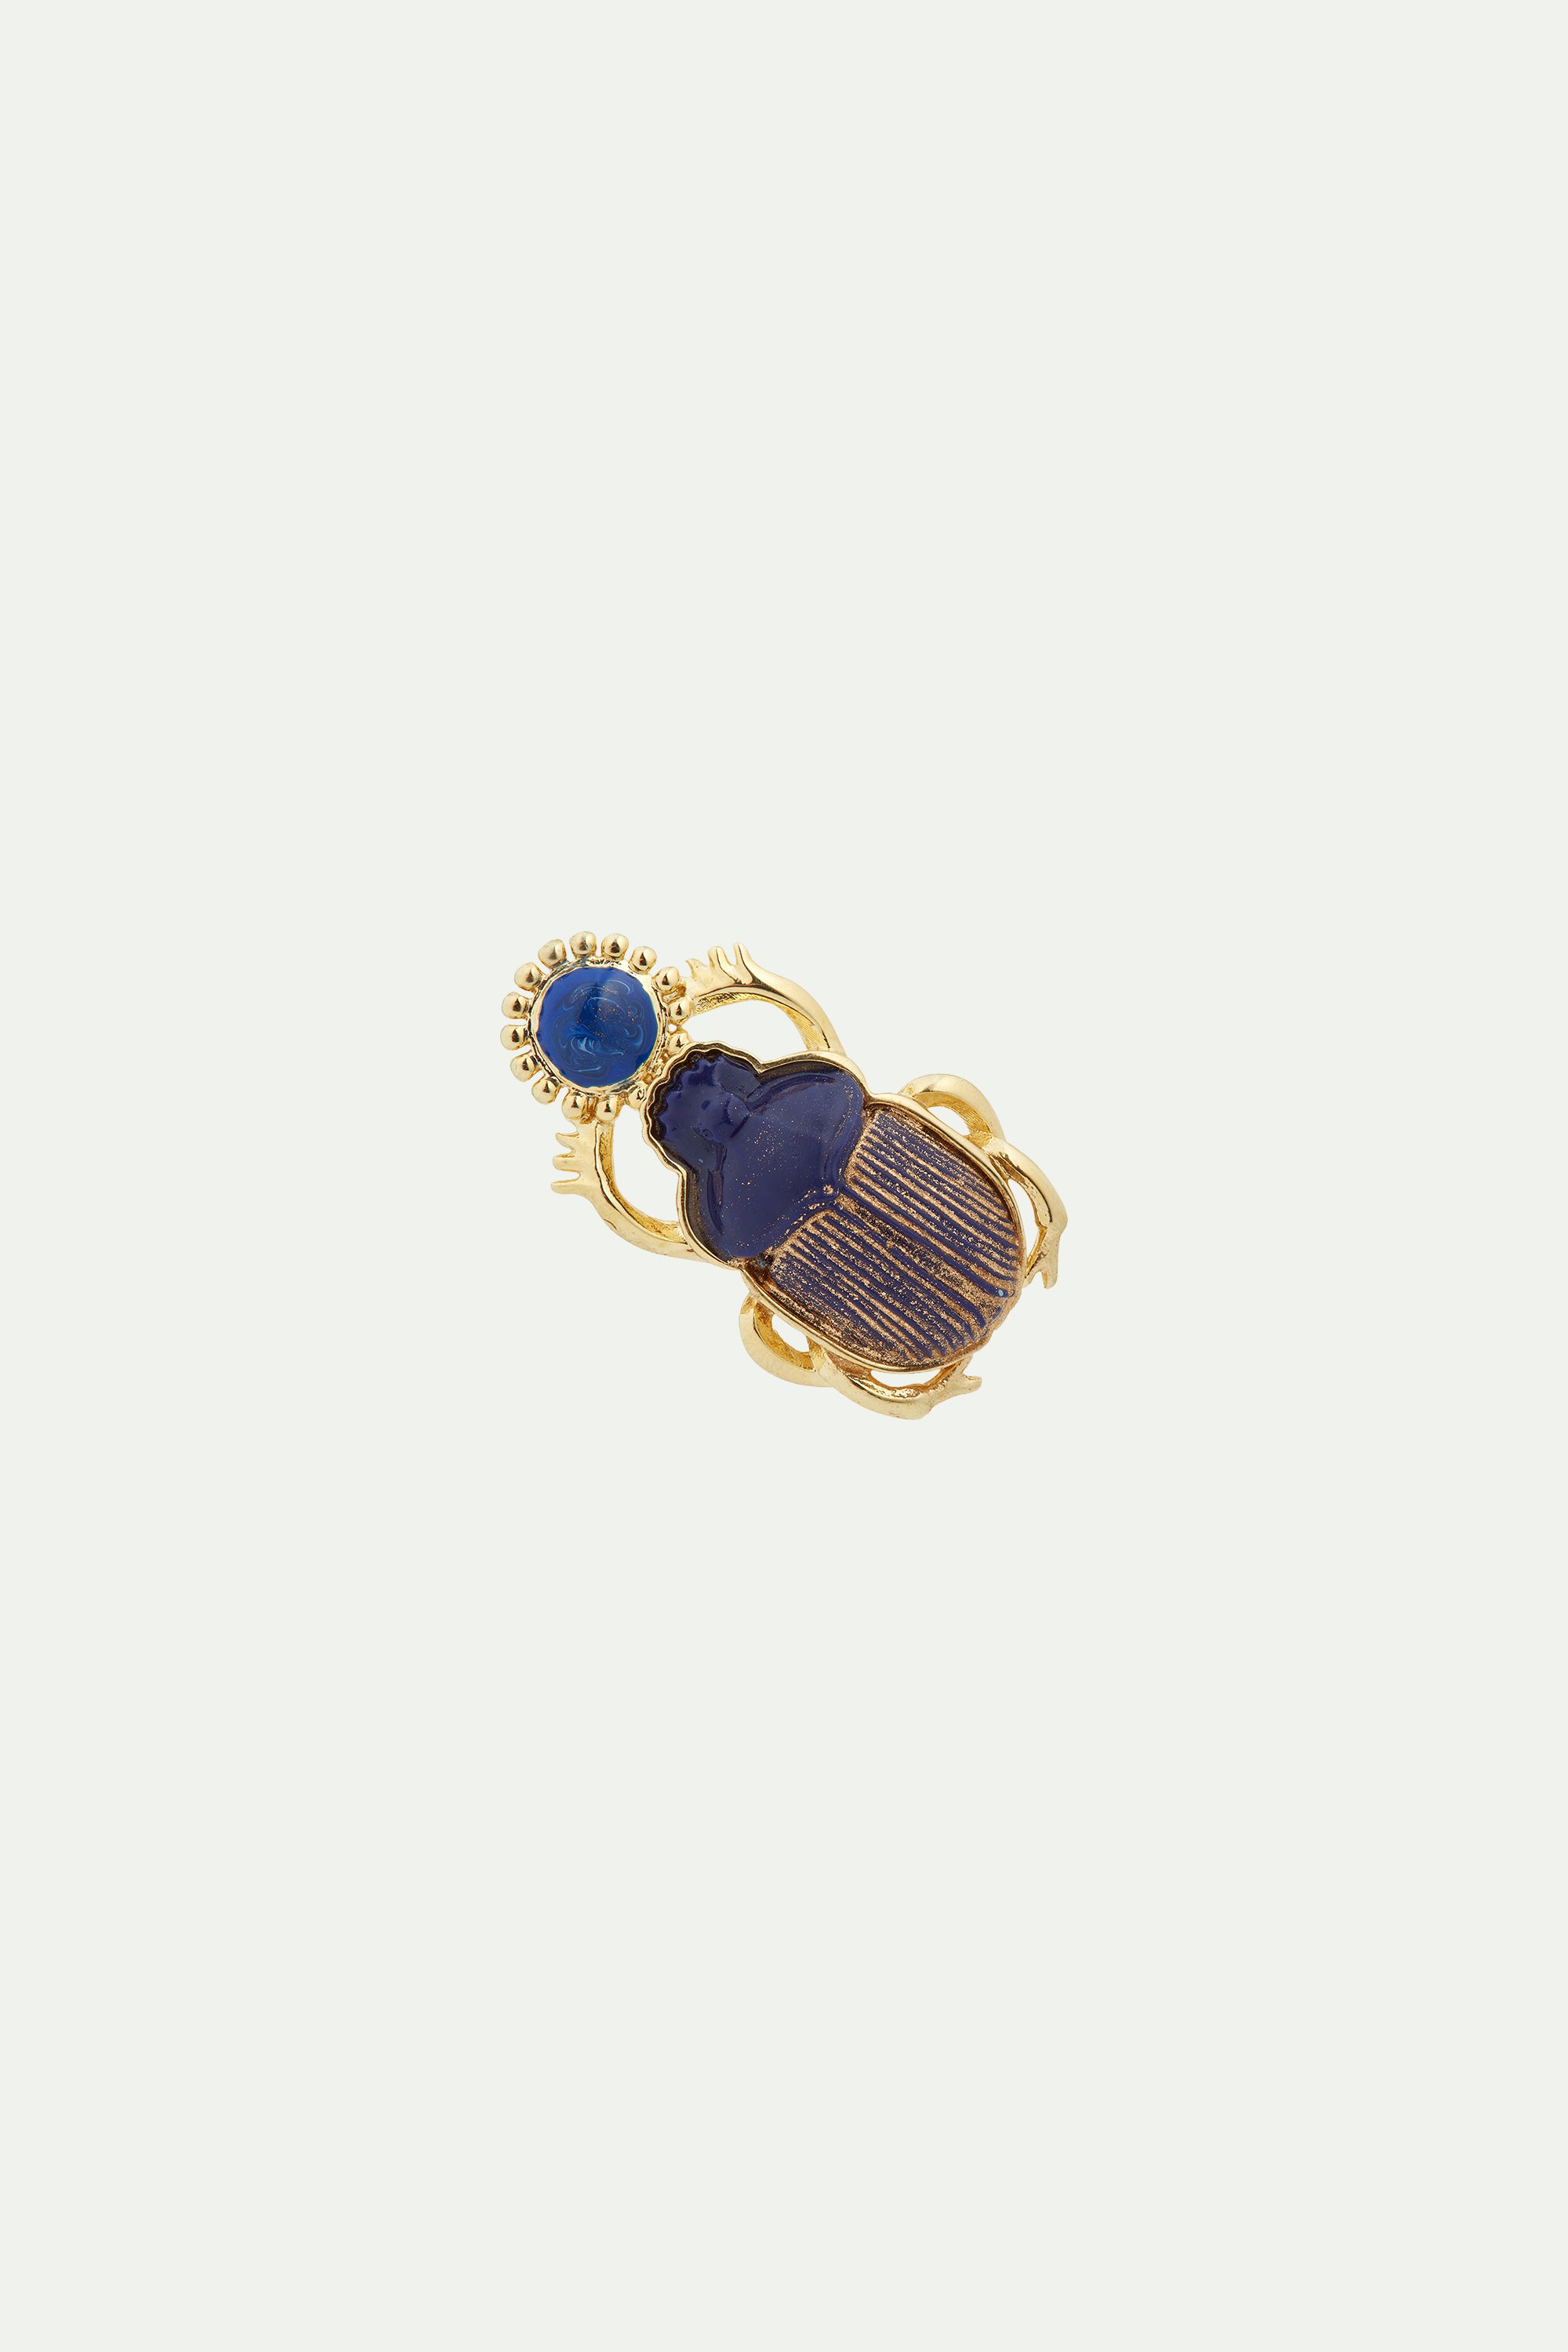 Broche escarabajo azul sagrado de Egipto